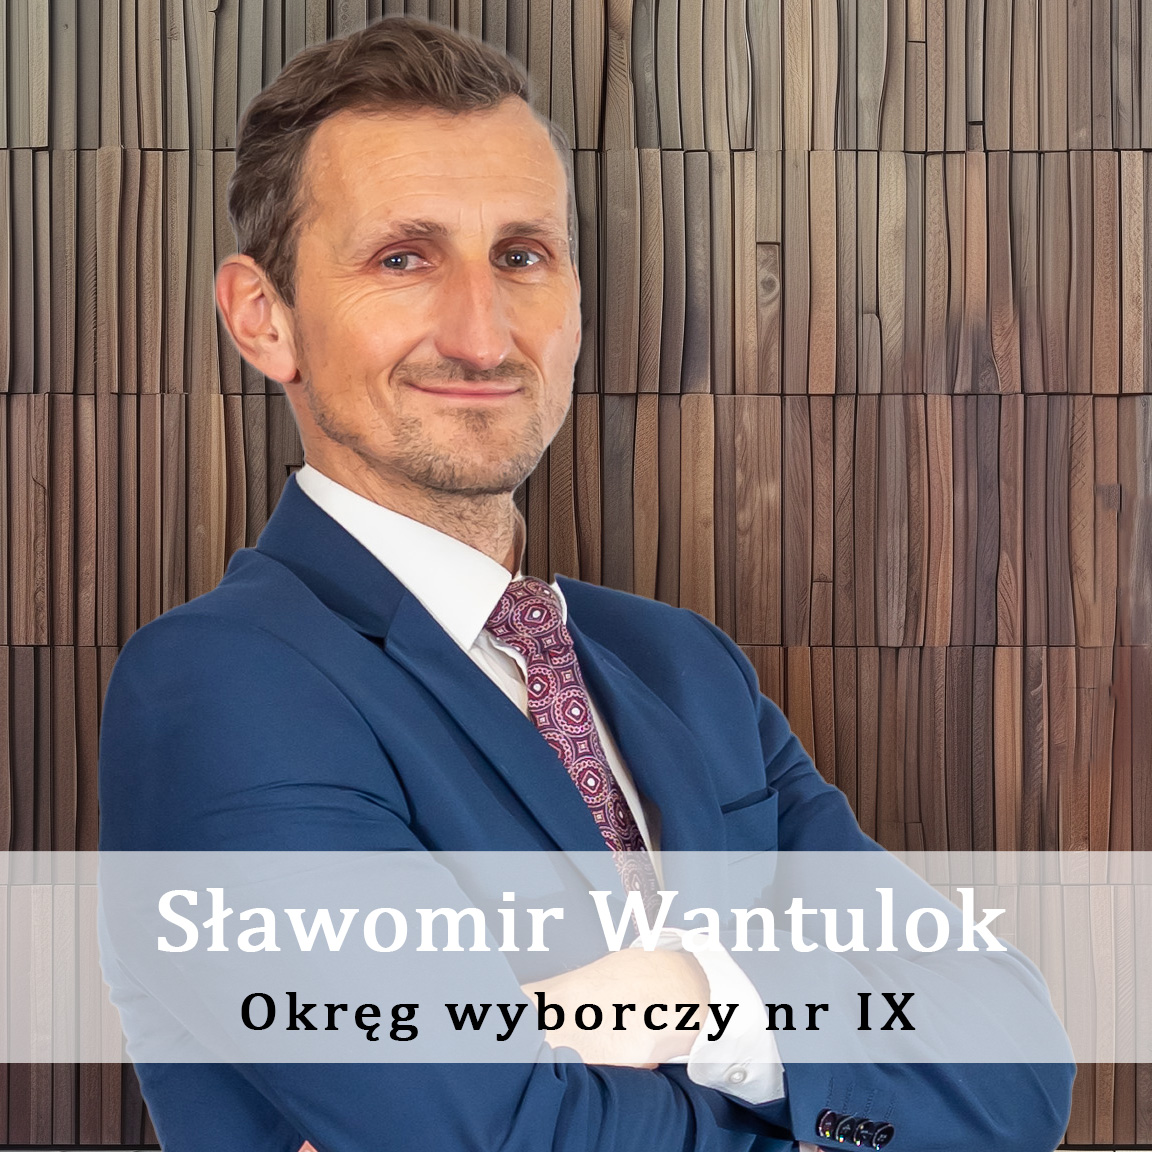 Slawomir-Wantulok-Okreg-wyborczy-nr-9-Radny-Miasto-Wisla